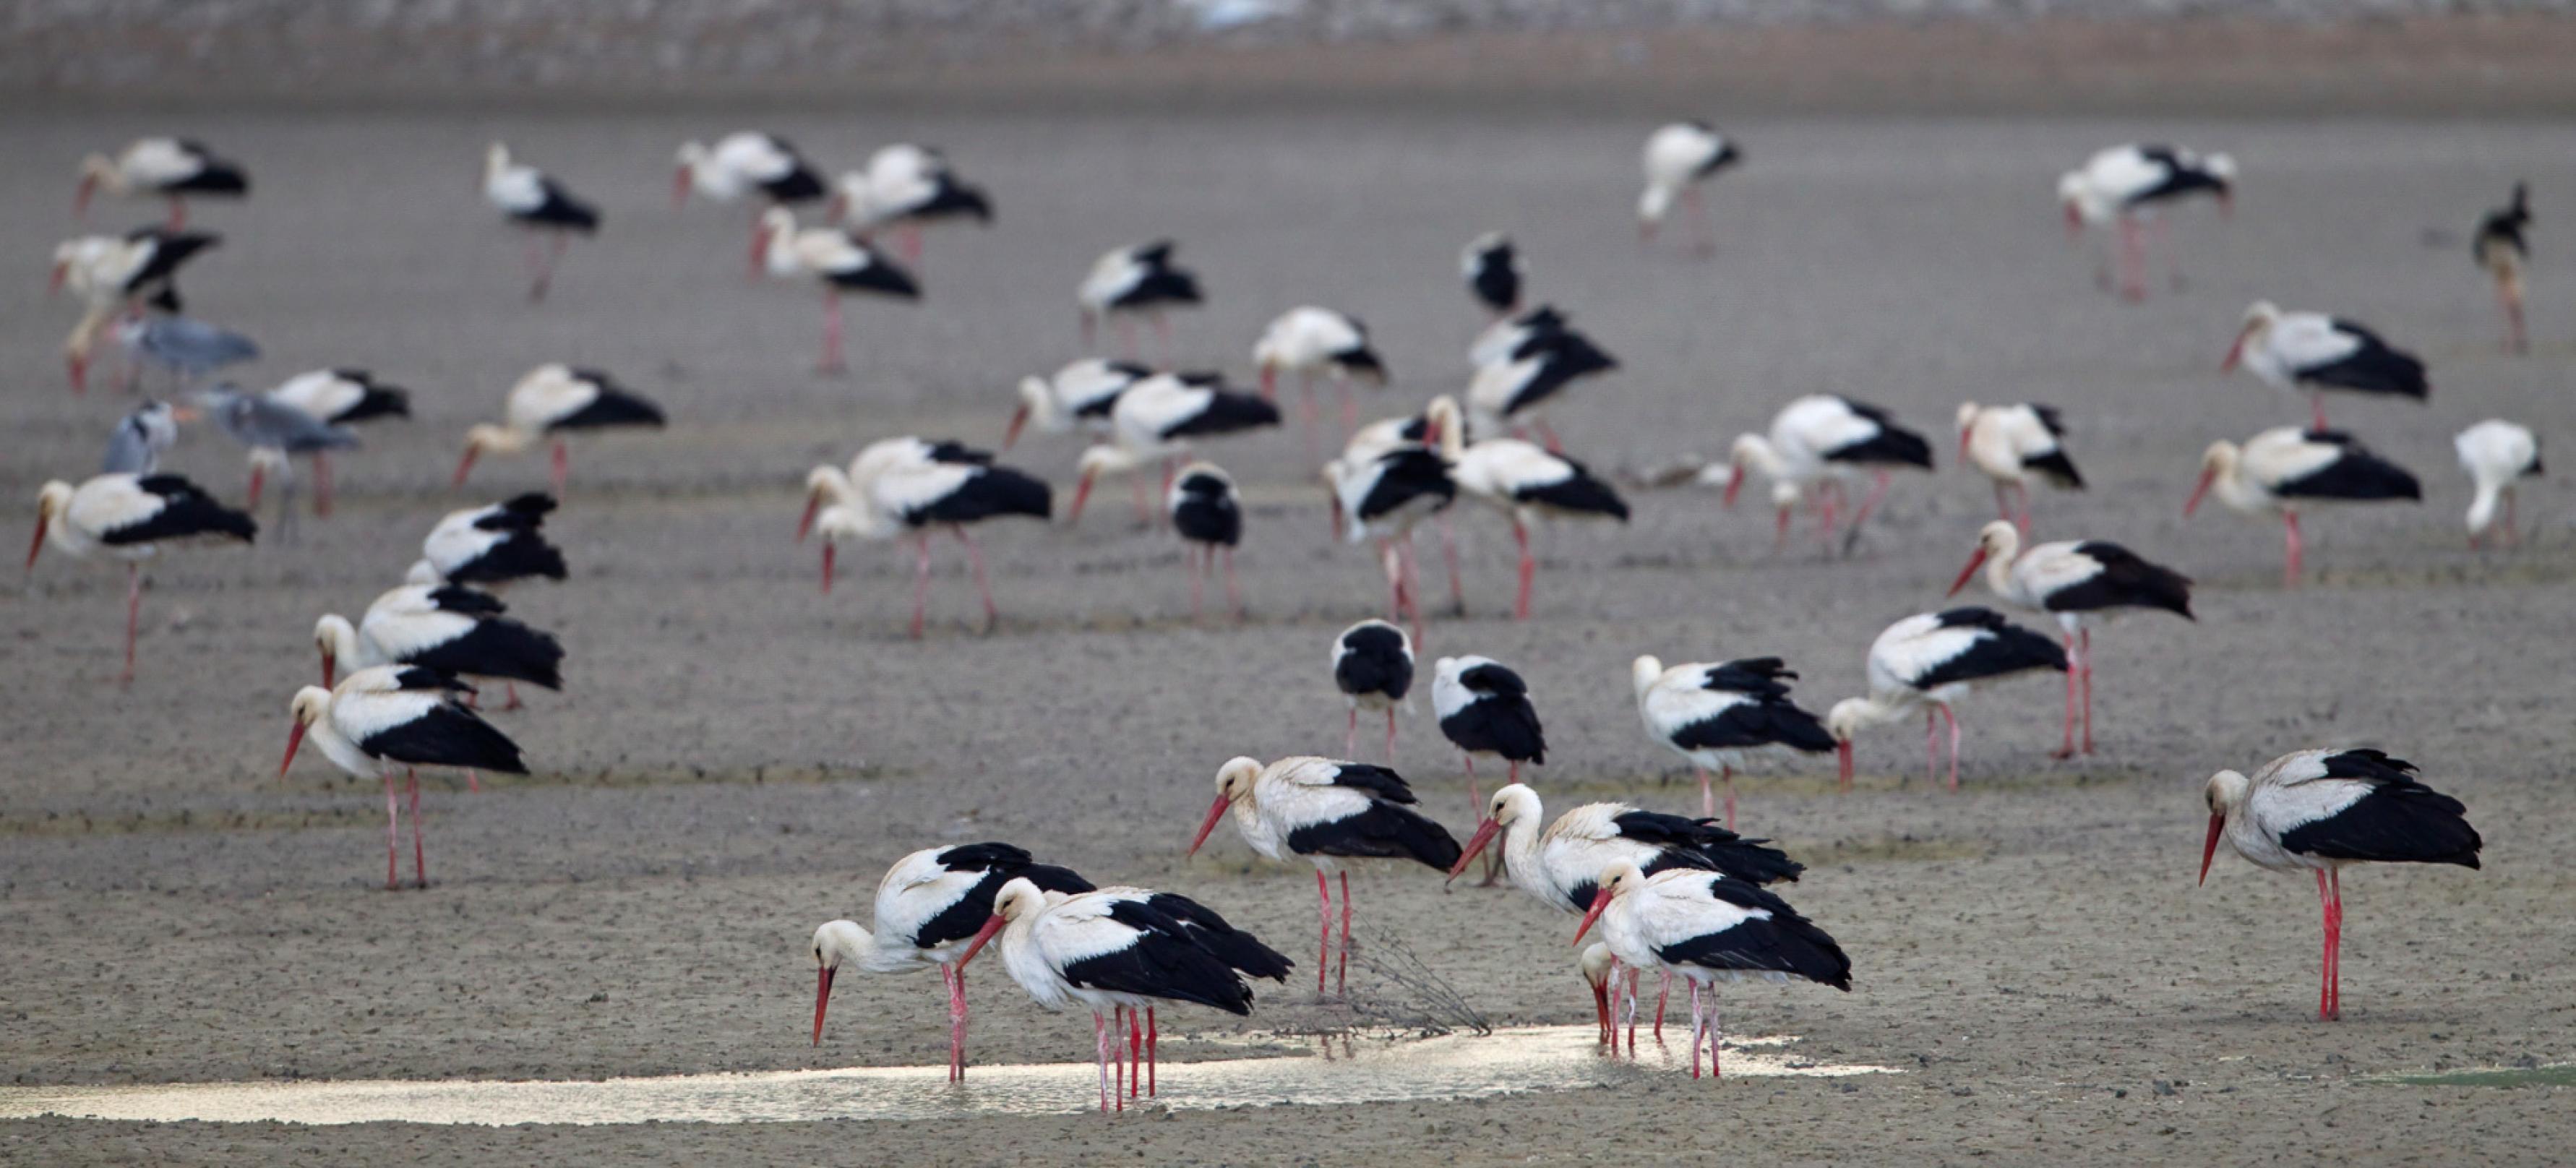 Rund zwei Dutzend große weiße Vögel mit schwarzen Flügel- und Schwanzspitzen und leuchtend roten Schnäbeln und Beinen stehen auf einer grauen Sandfläche herum. Zwei picken in einer Pfütze, in der sich Wasser gesammelt hat.